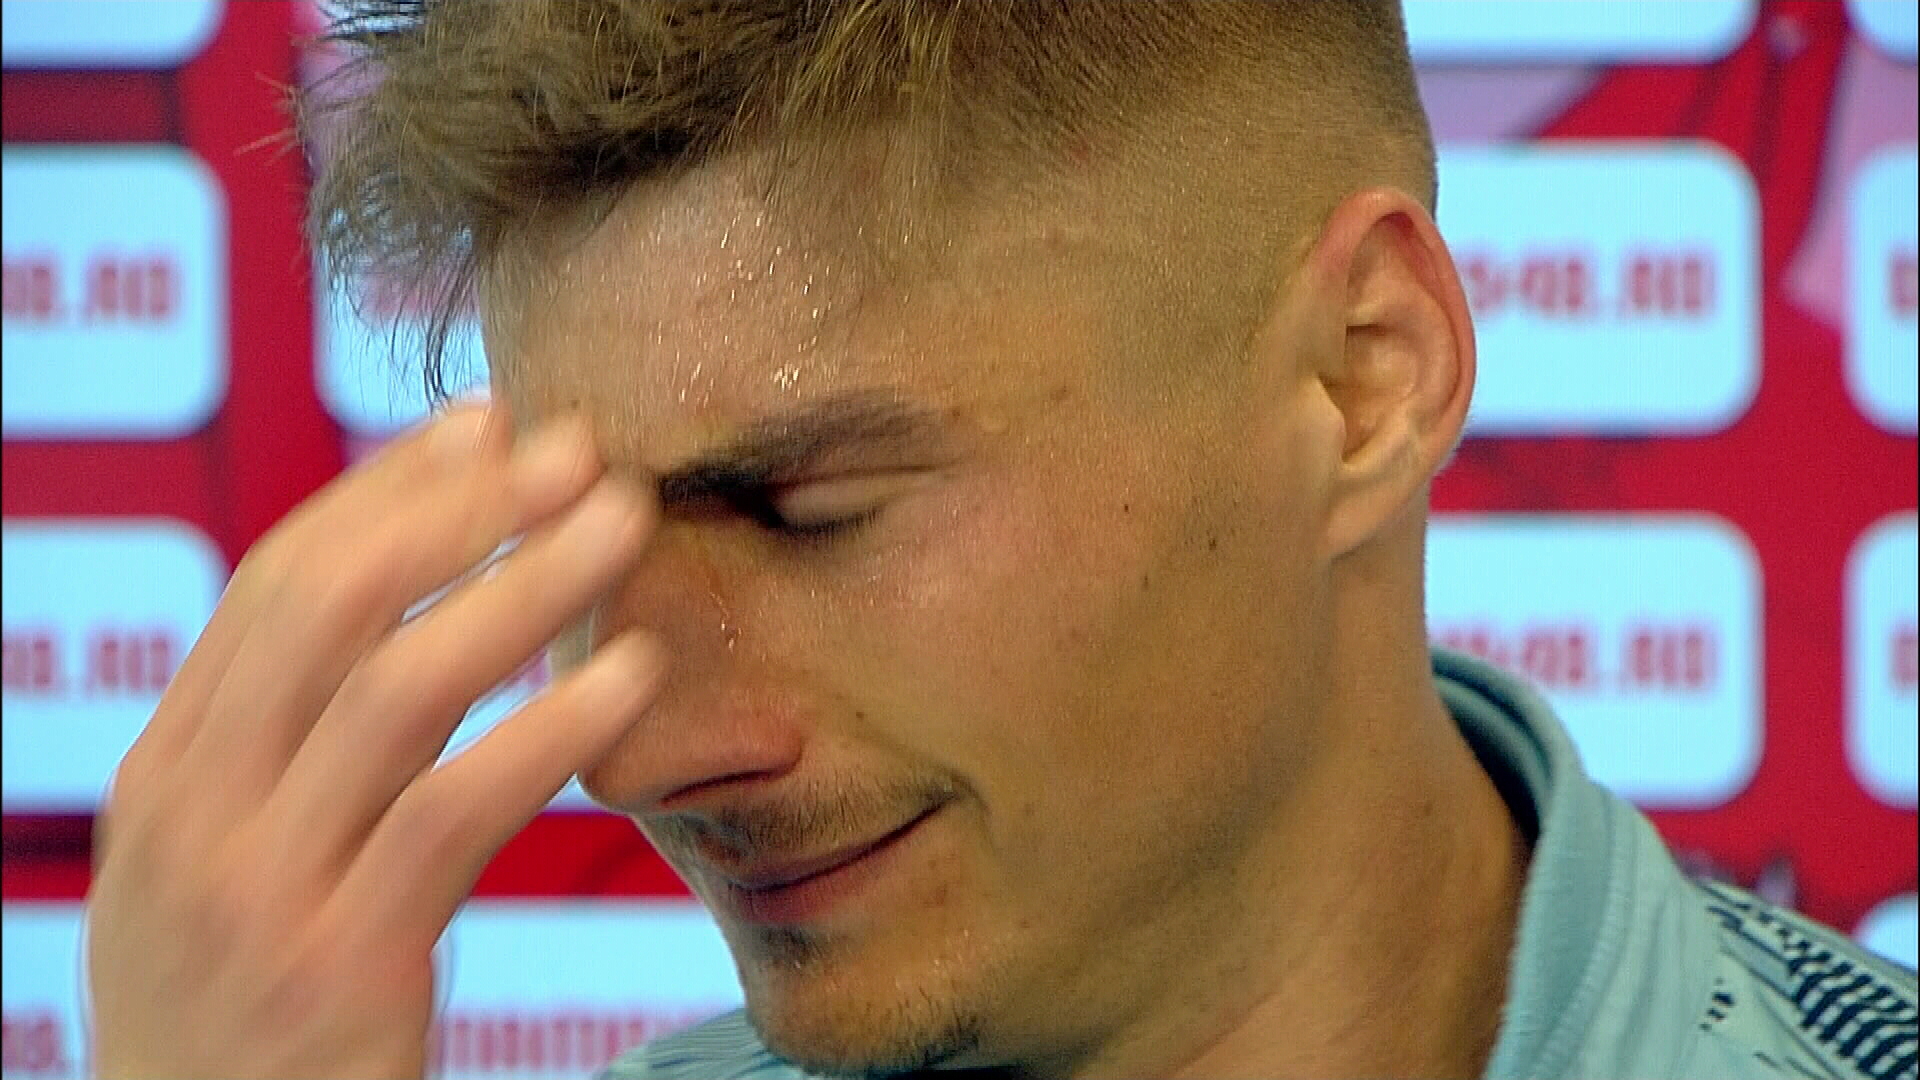 Război la FC Argeș, după umilința cu Dinamo! Cu lacrimi în ochi, și-a ”mitraliat” colegii: ”Poate au și ei ceva de spus”